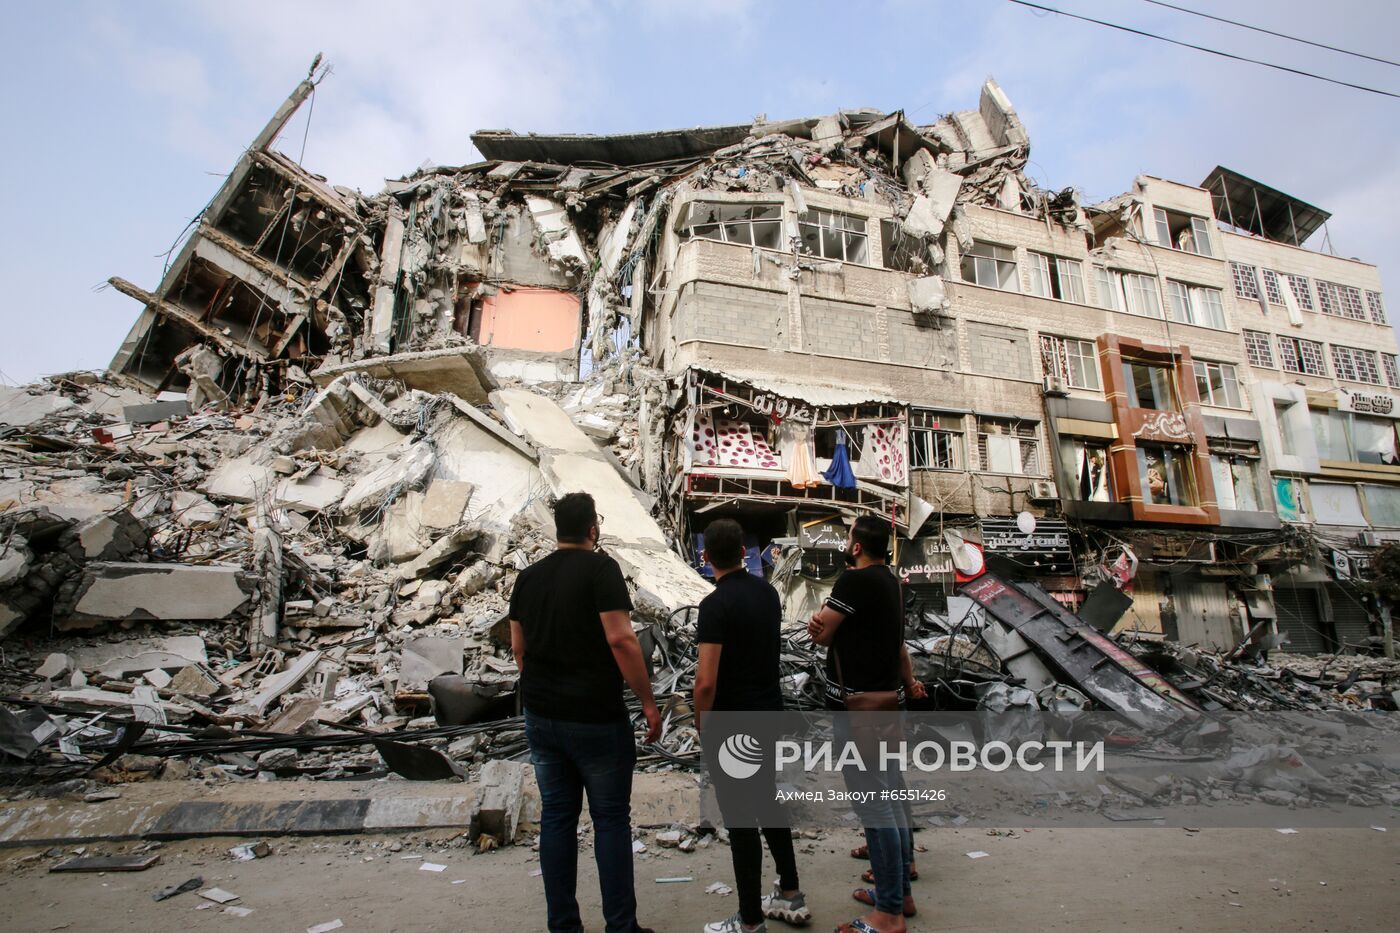 ماكرون: القصف الإسرائيلي على قطاع غزة يستهدف المدنيين ولا شرعية له ويجب وقف إطلاق النار